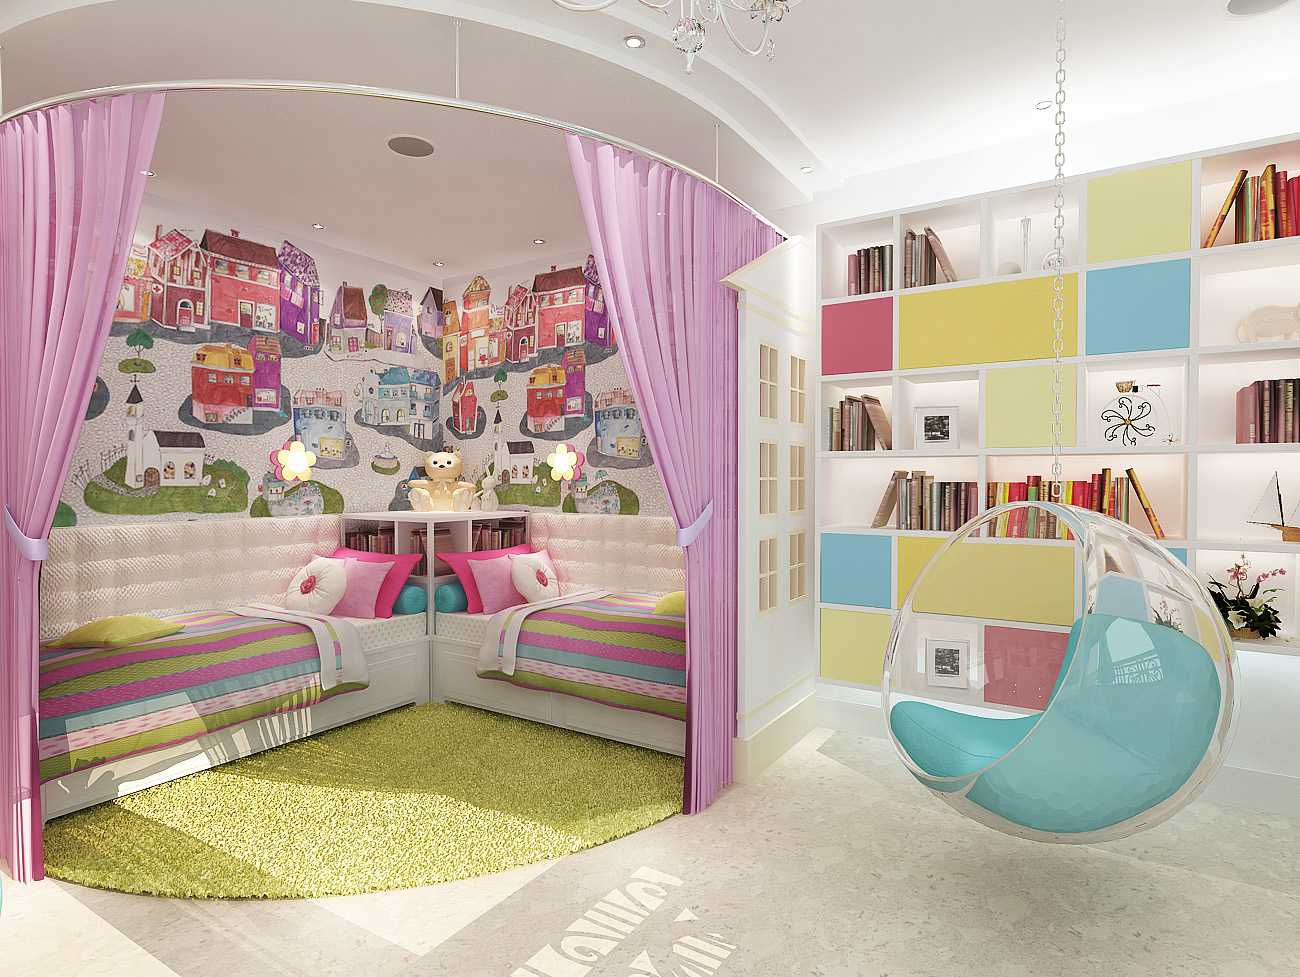 Дизайн детской комнаты 9 кв м: фото примеров интерьера, варианты планировки